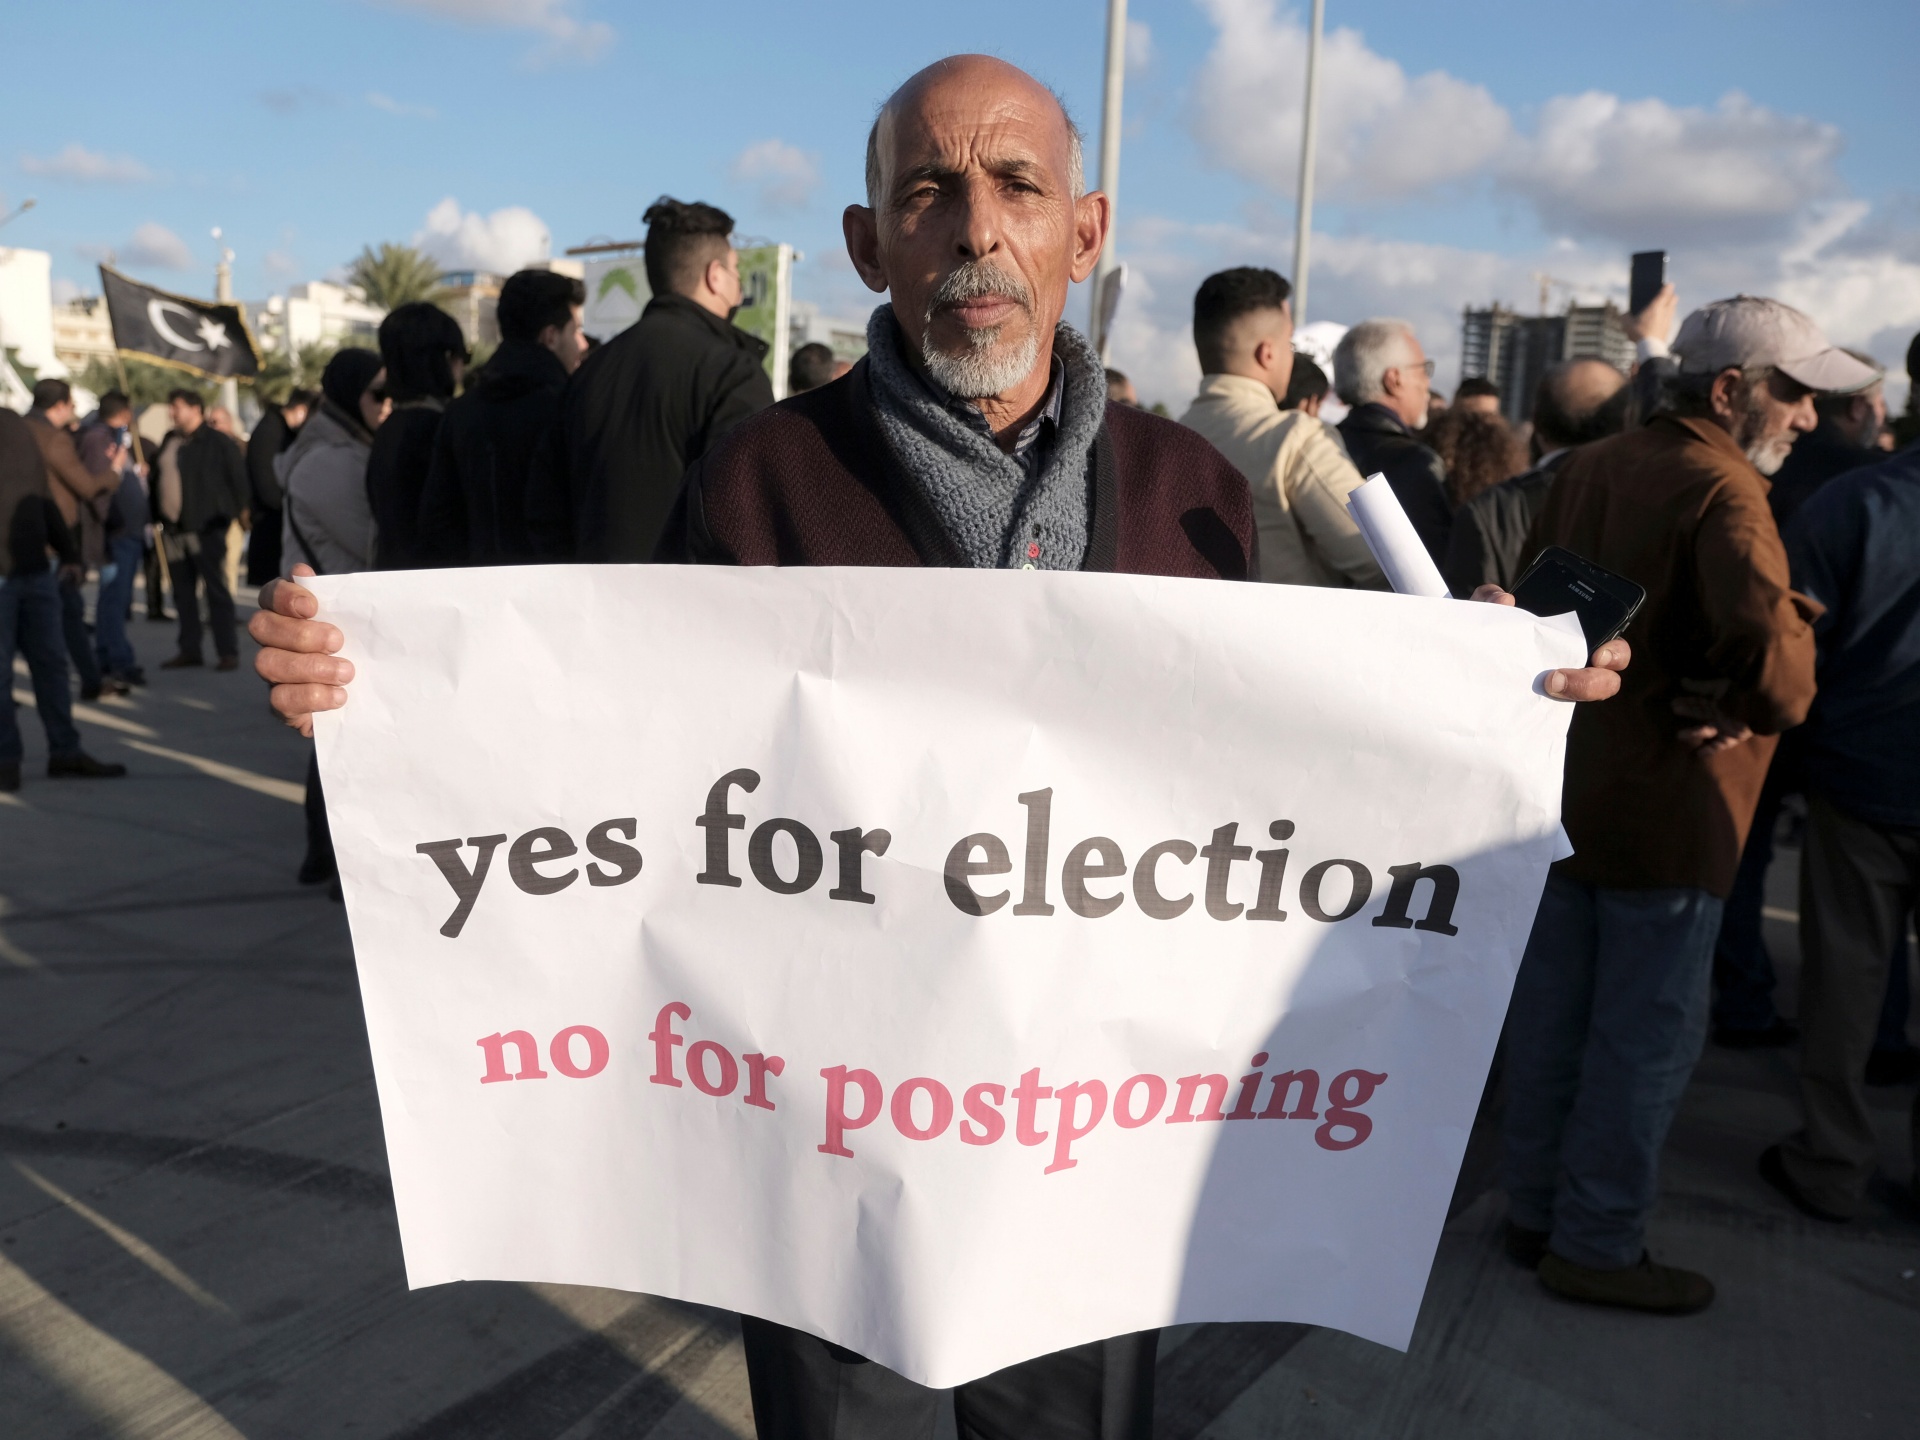 Líbia acordo 6+6: brechas lançam dúvidas sobre eleições democráticas